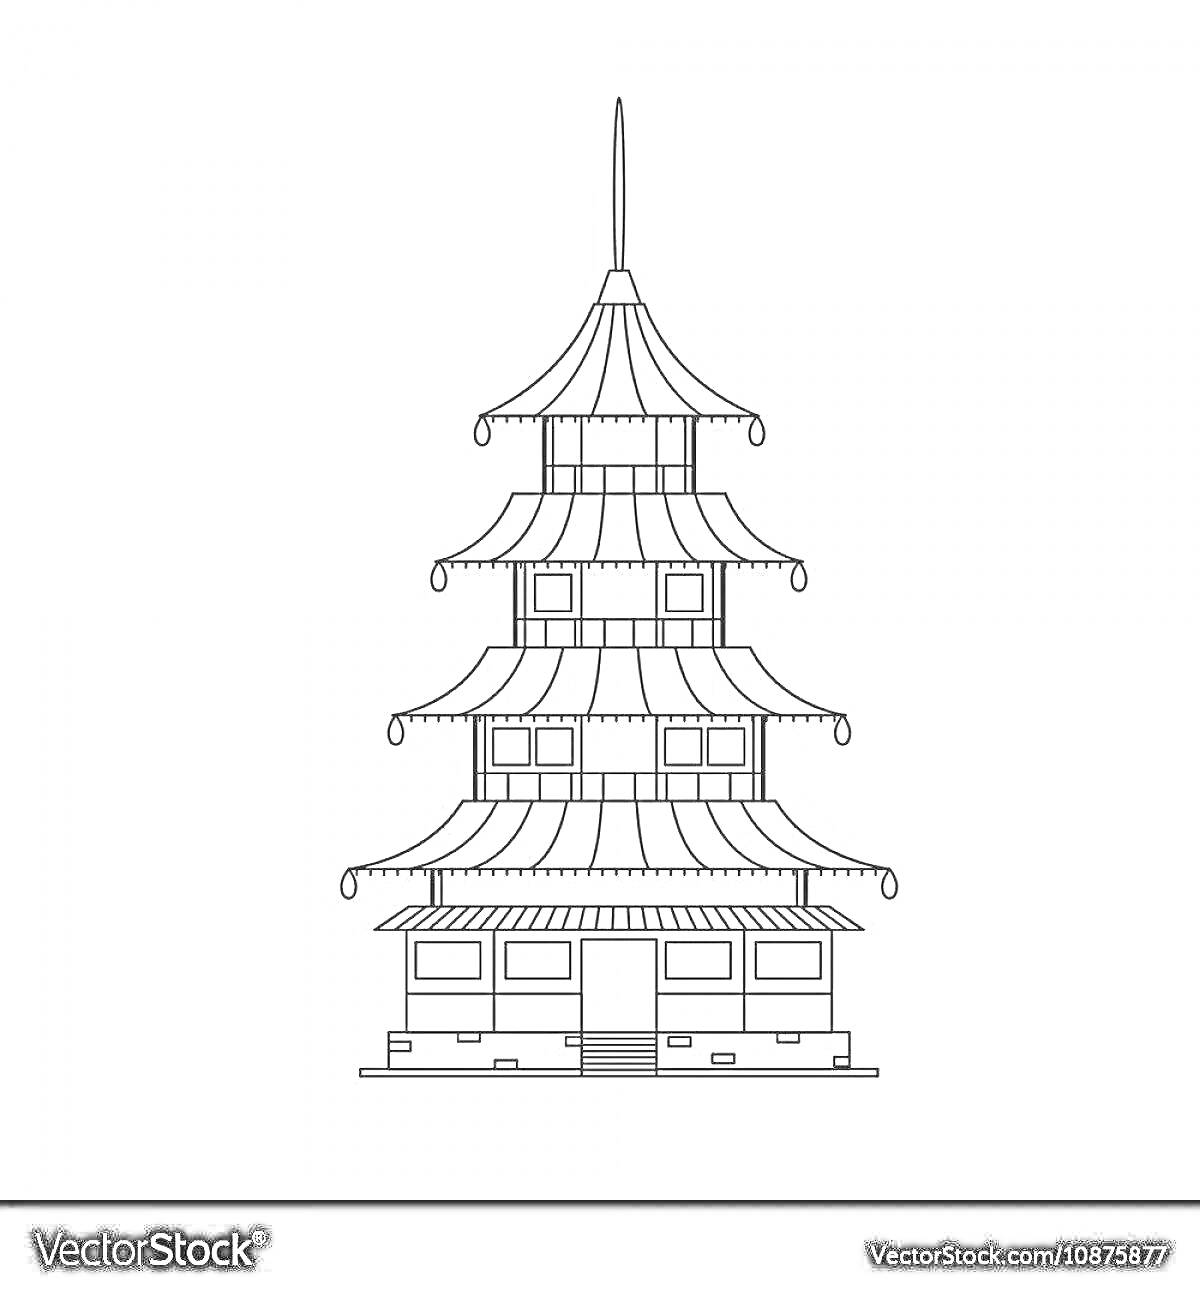 Раскраска Пятиуровневая пагода с многочисленными крышей и окнами